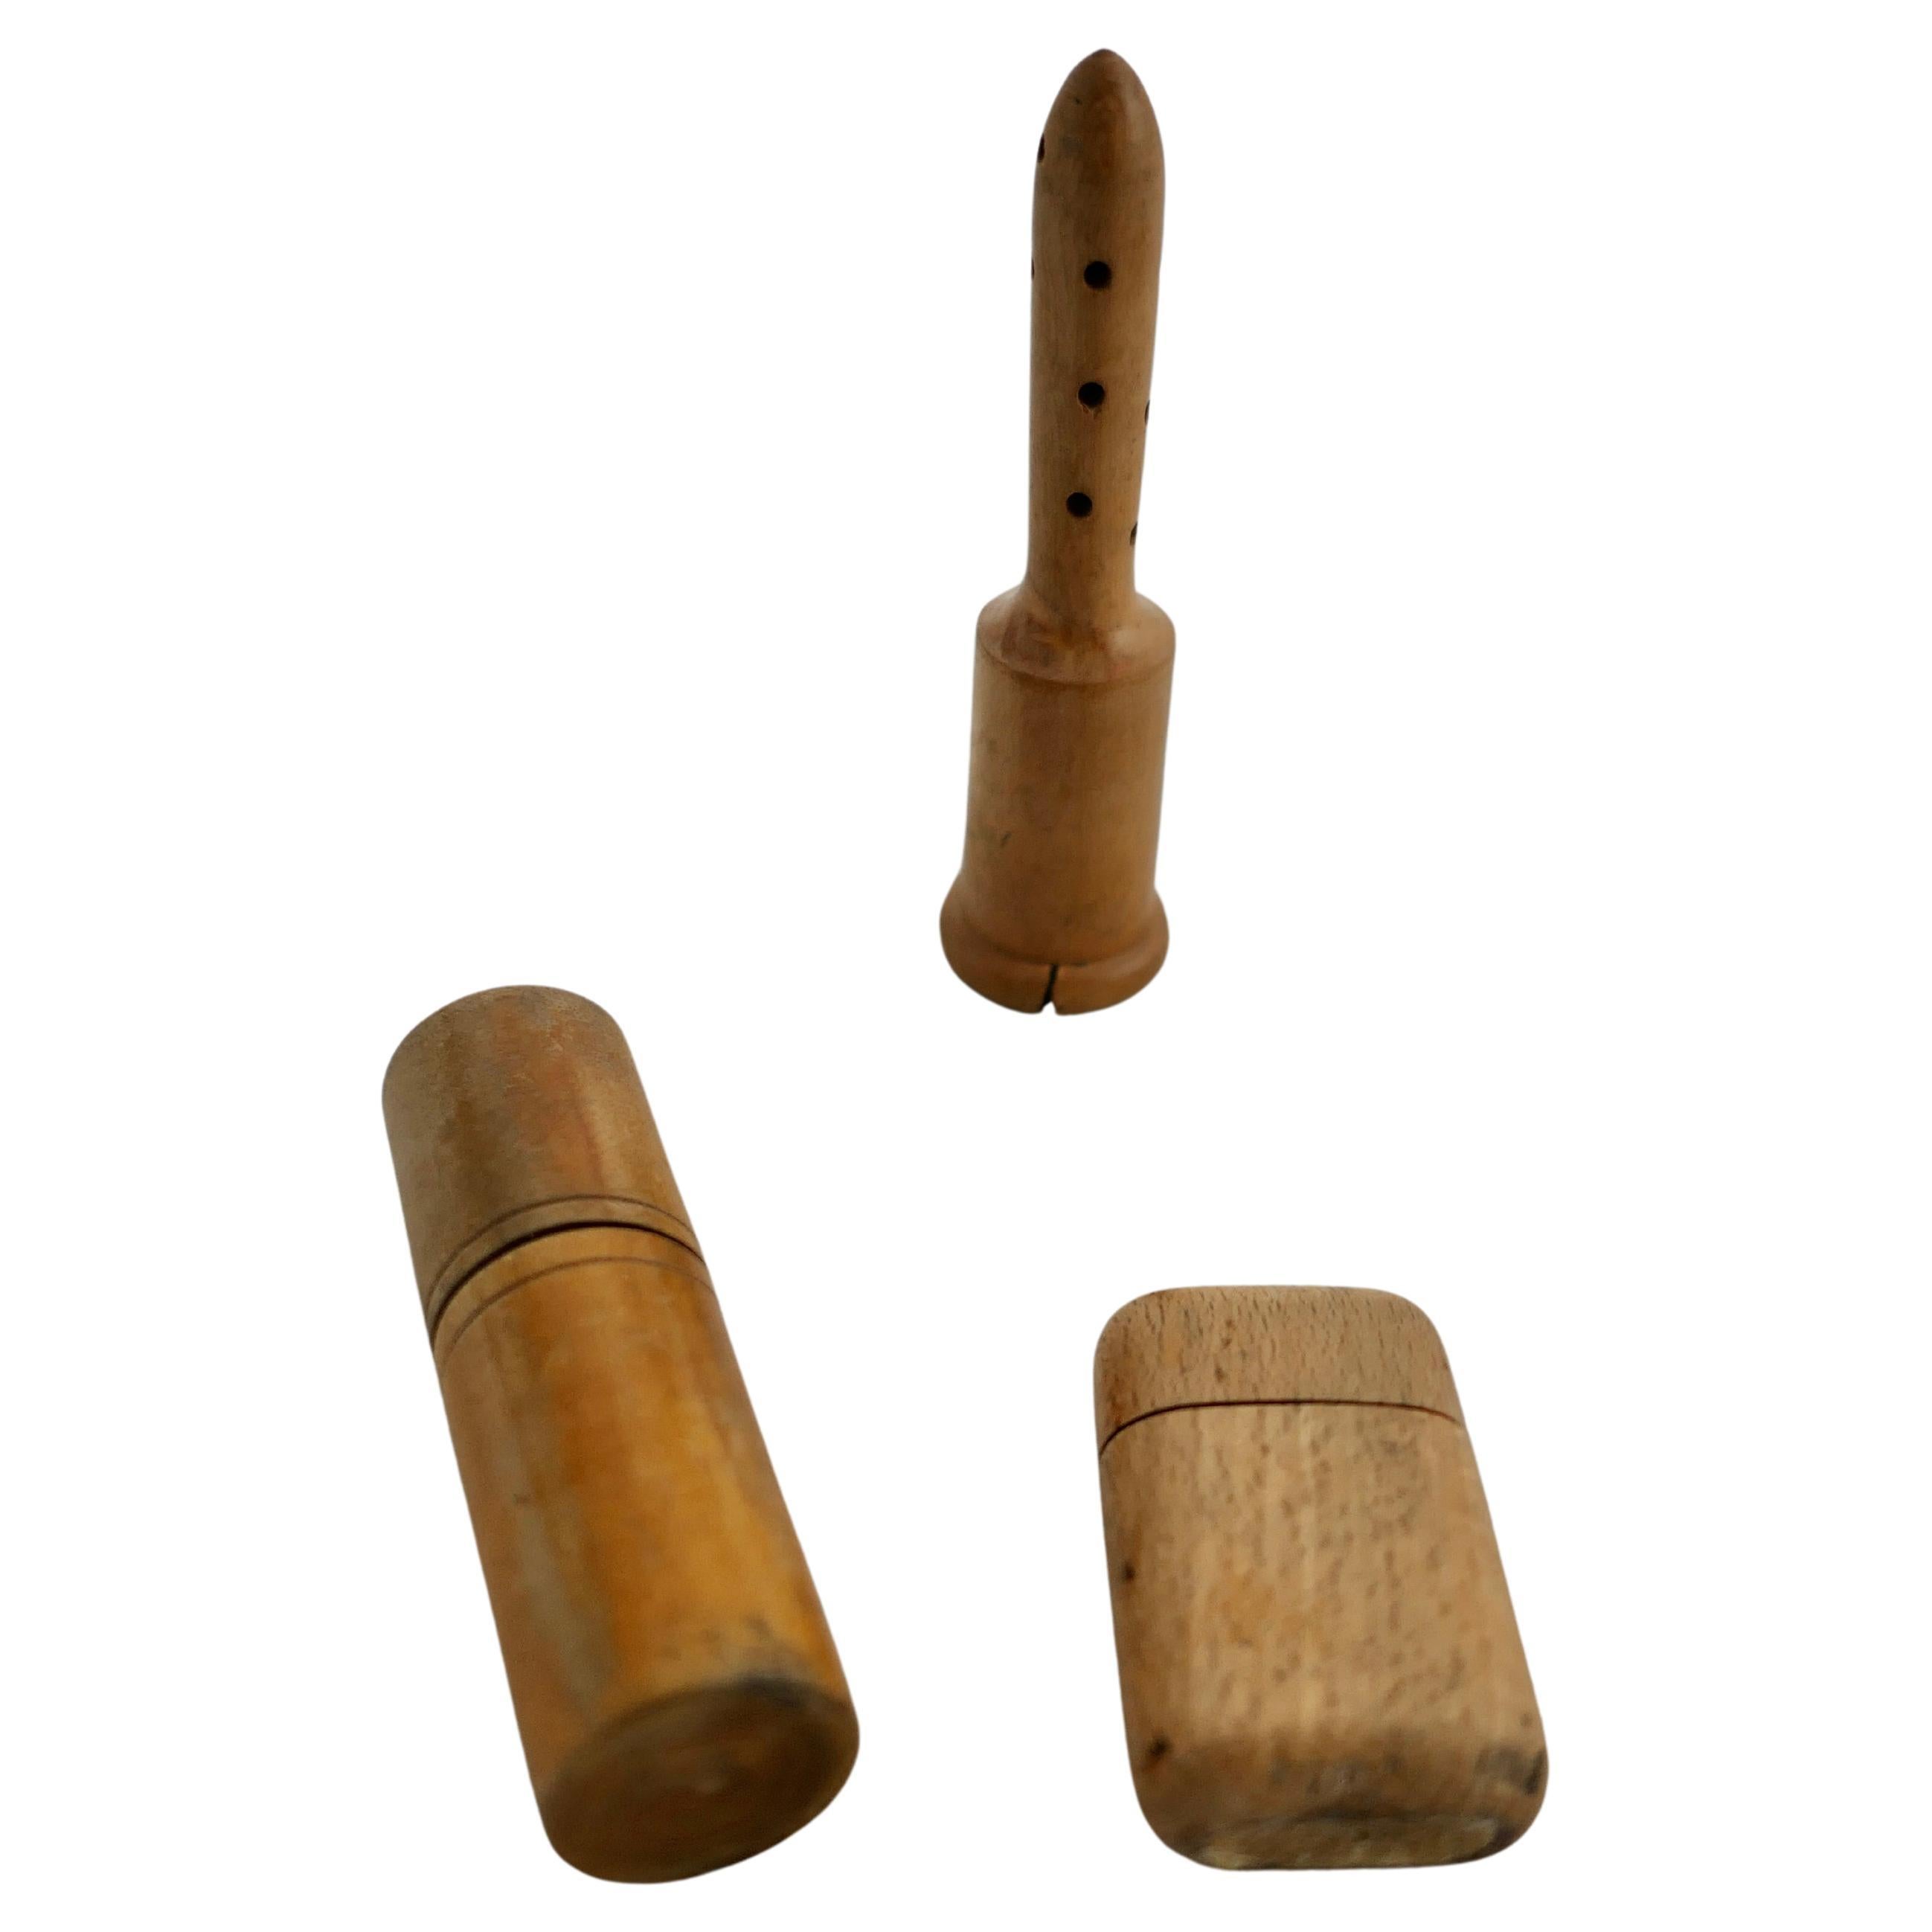 3 objets en térébenthine fabriqués à la main au 19e siècle, poudre, parfum et allumettes    en vente